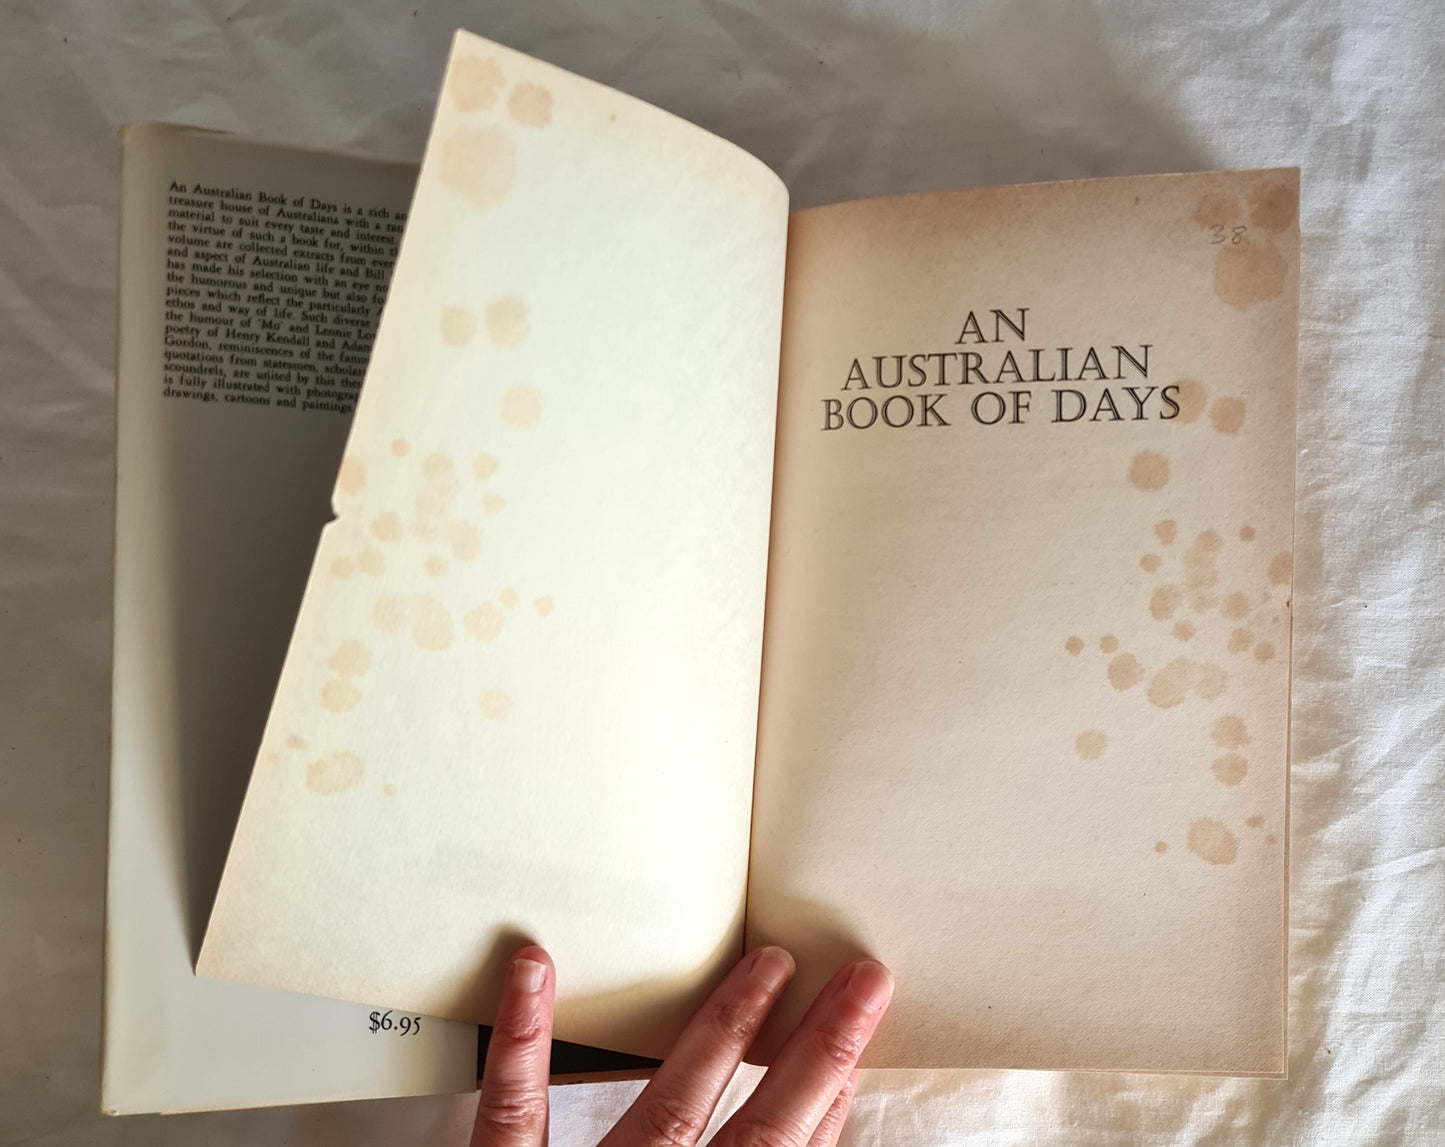 An Australian Book of Days by Bill Wannan